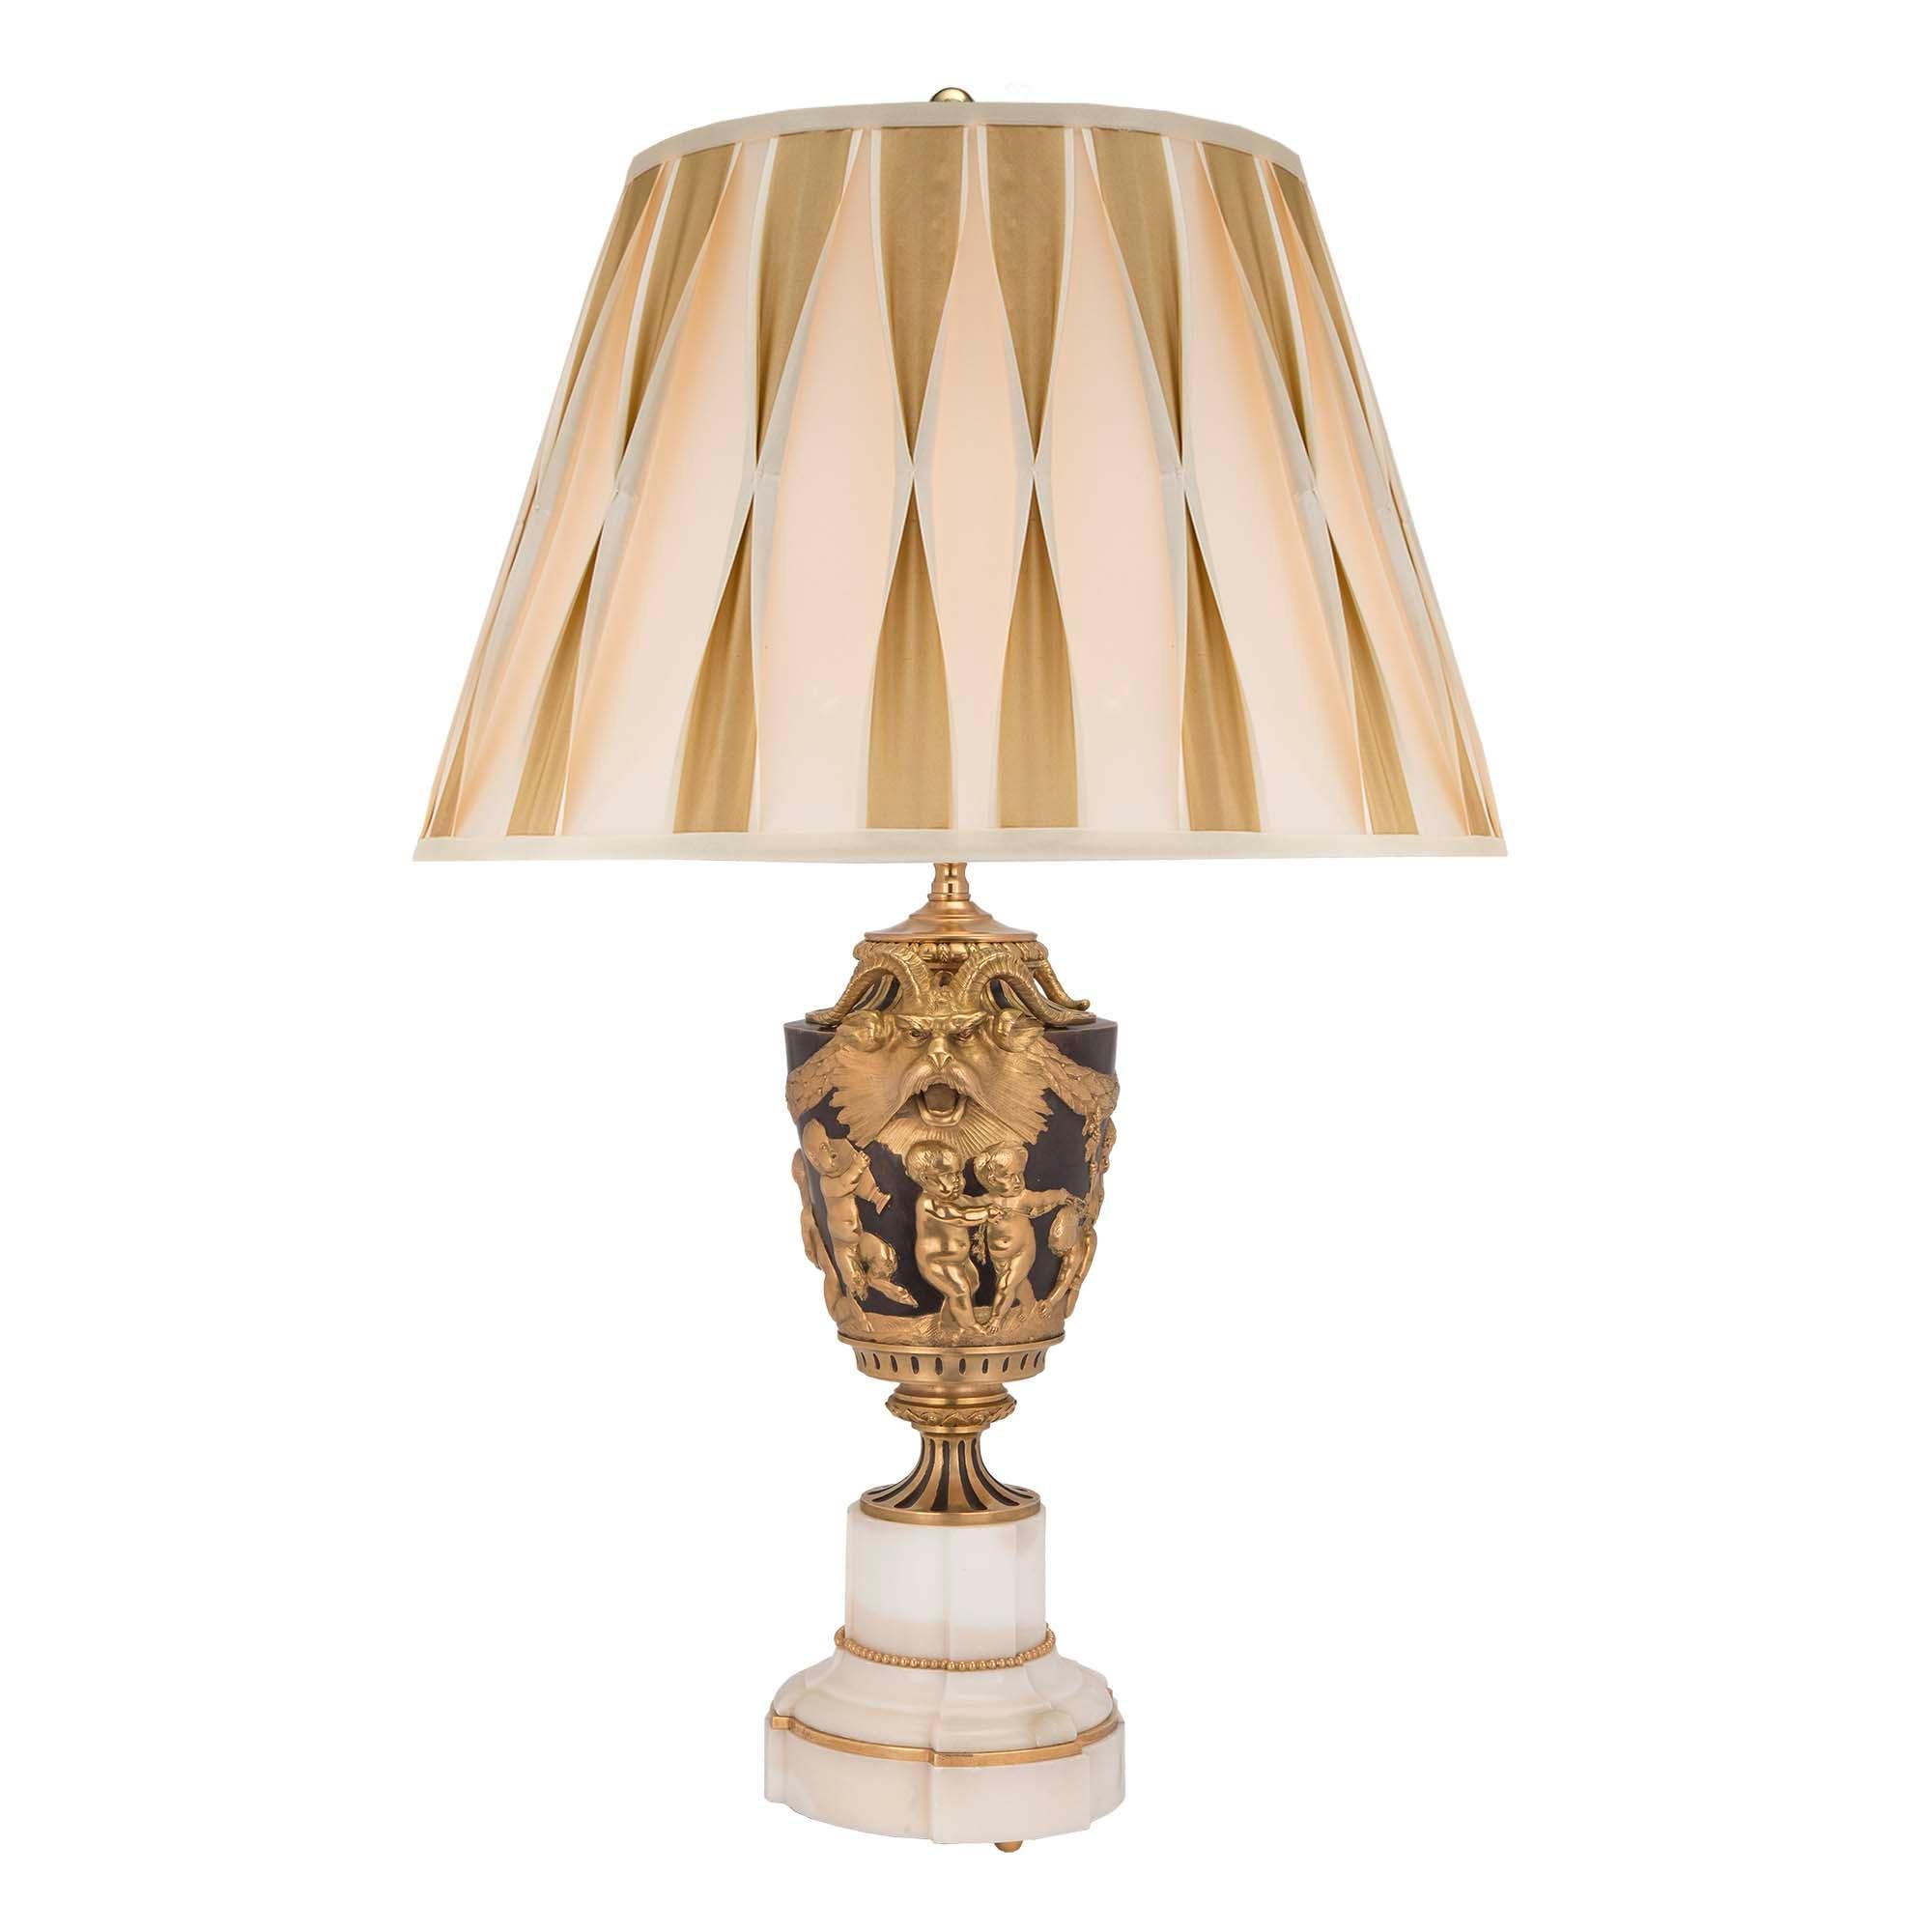 Une très élégante paire de lampes françaises du XIXe siècle, de style Louis XVI, en bronze patiné et bronze doré, d'après un modèle de John Flaxman. Chaque lampe est surélevée par des pieds à boule en bronze doré et une base solide en marbre blanc